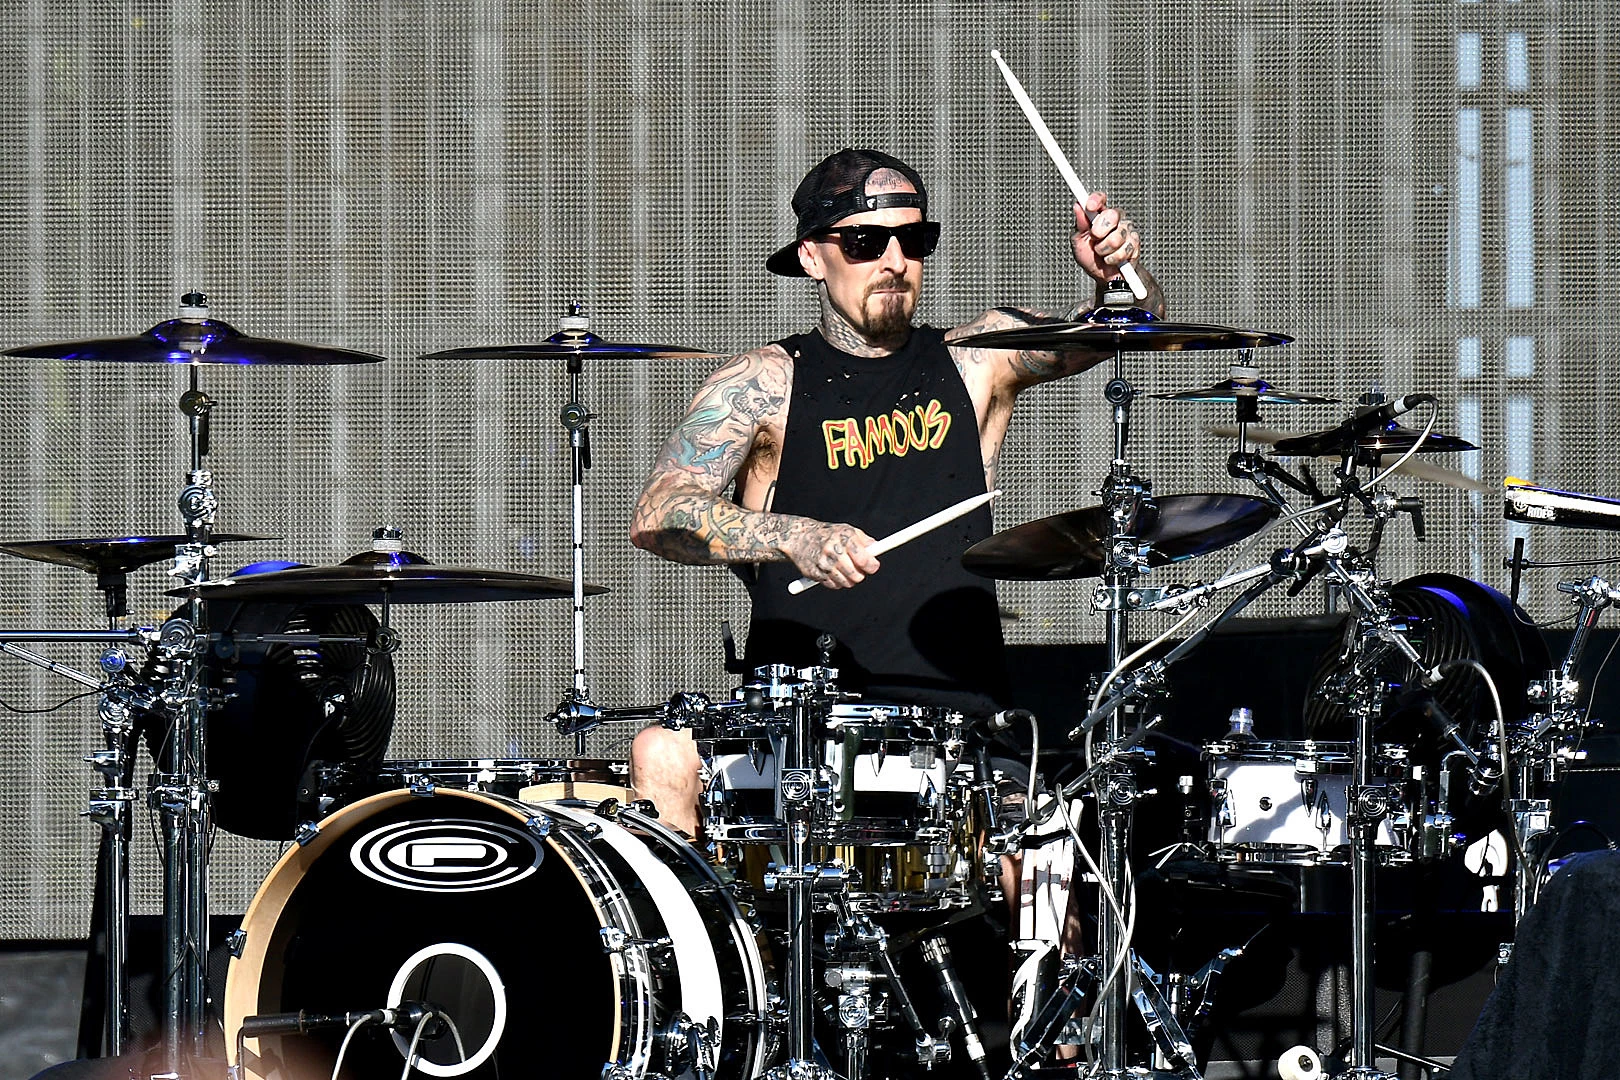 Travis Barker on drums